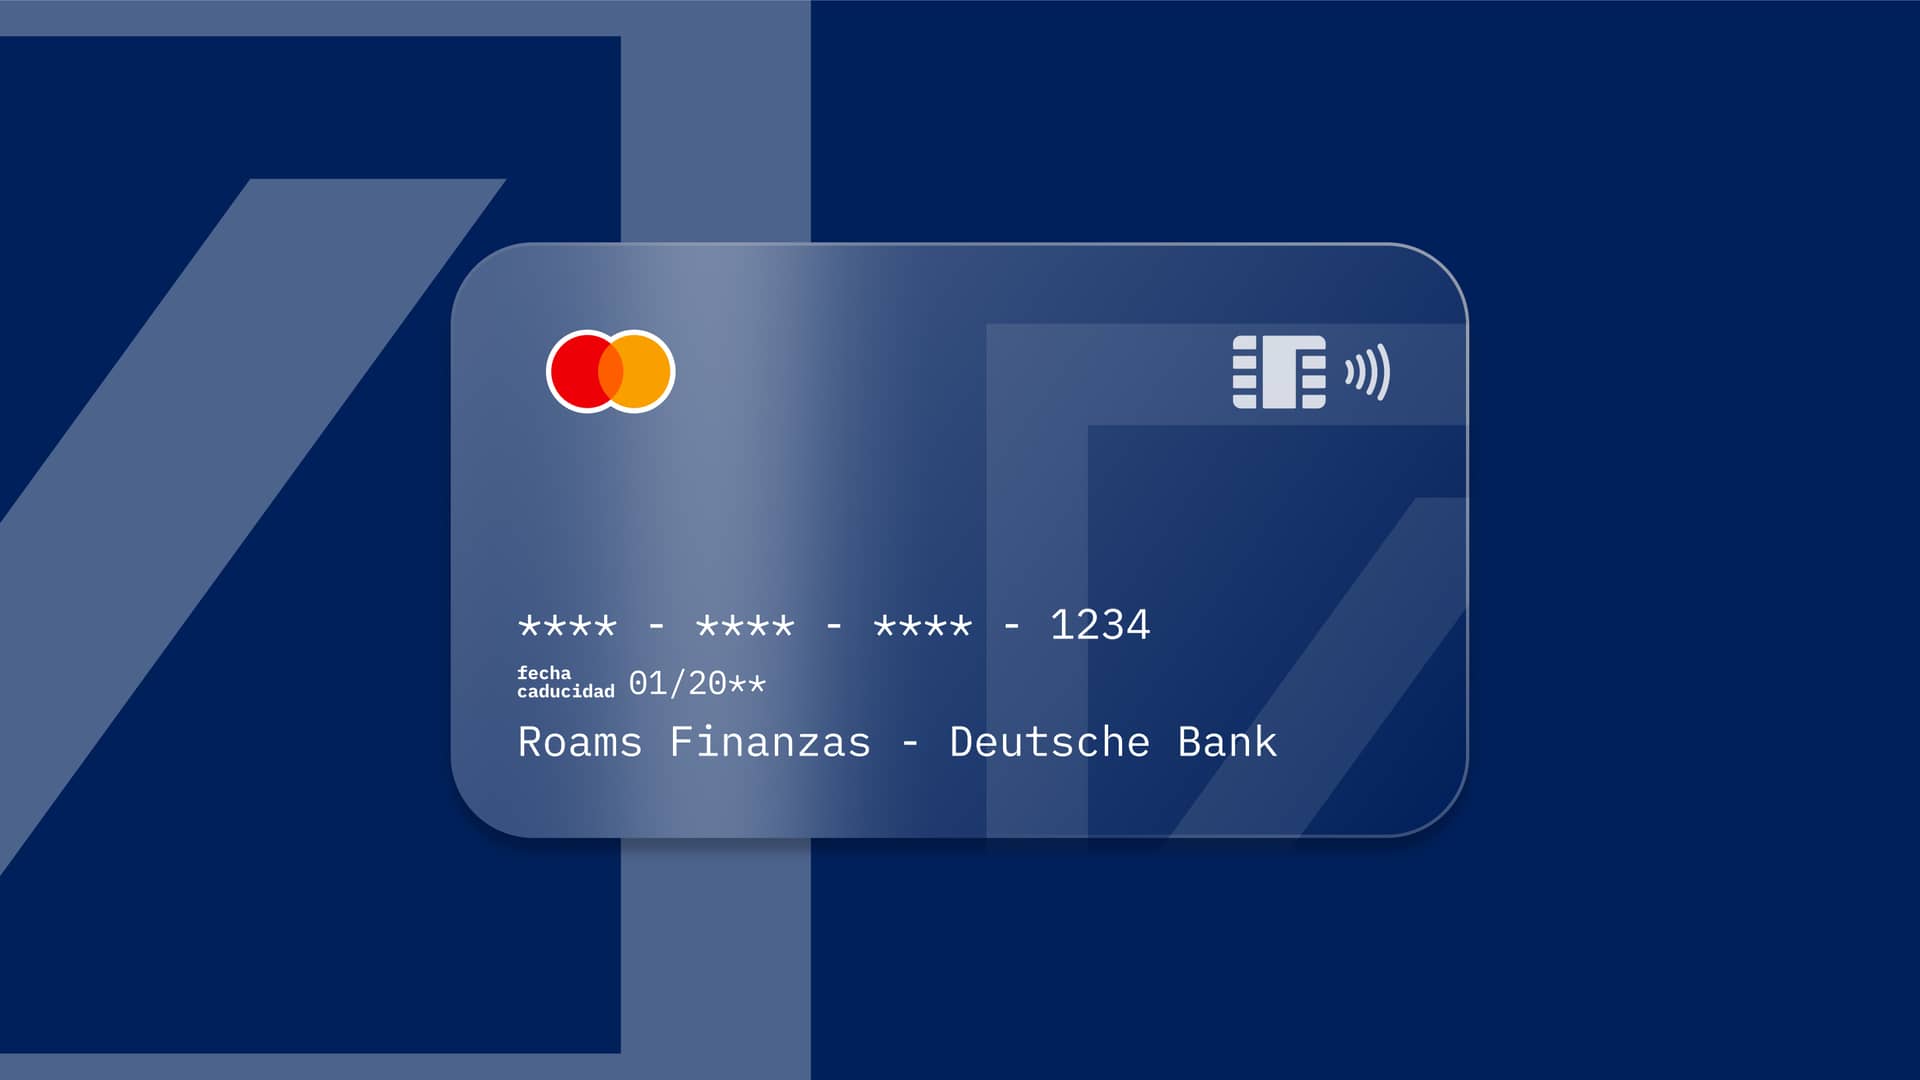 Joven pasando su tarjeta de crédito deutsche bank por tpv